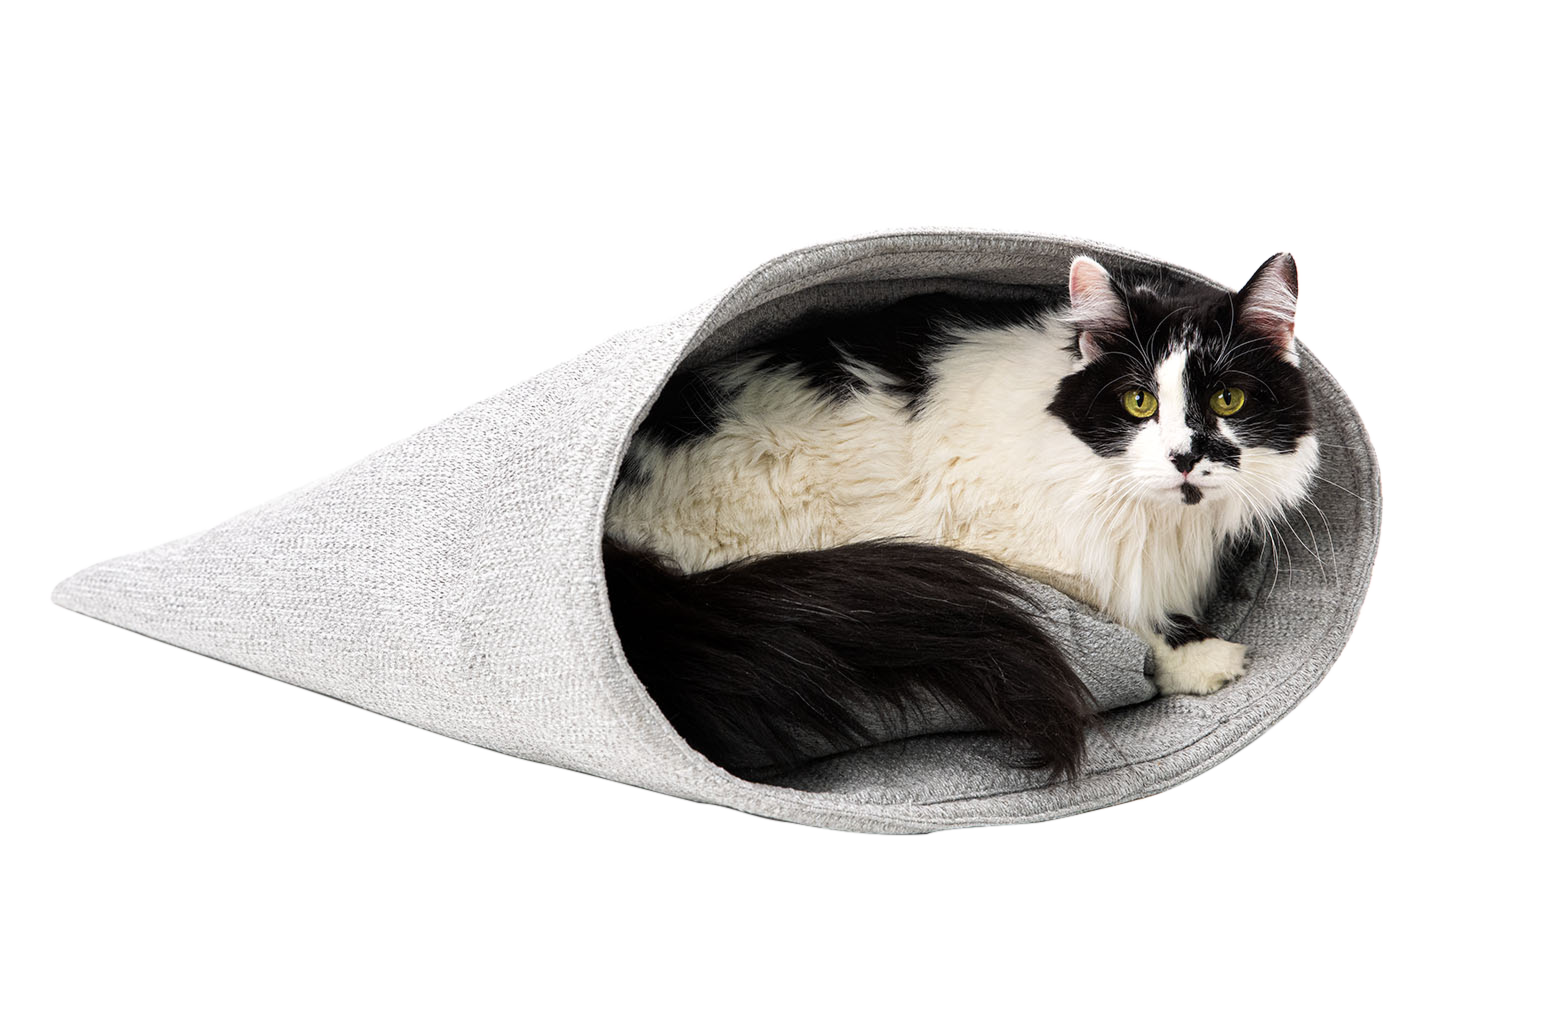 tuxedo longhaired cat in fancy cat sac